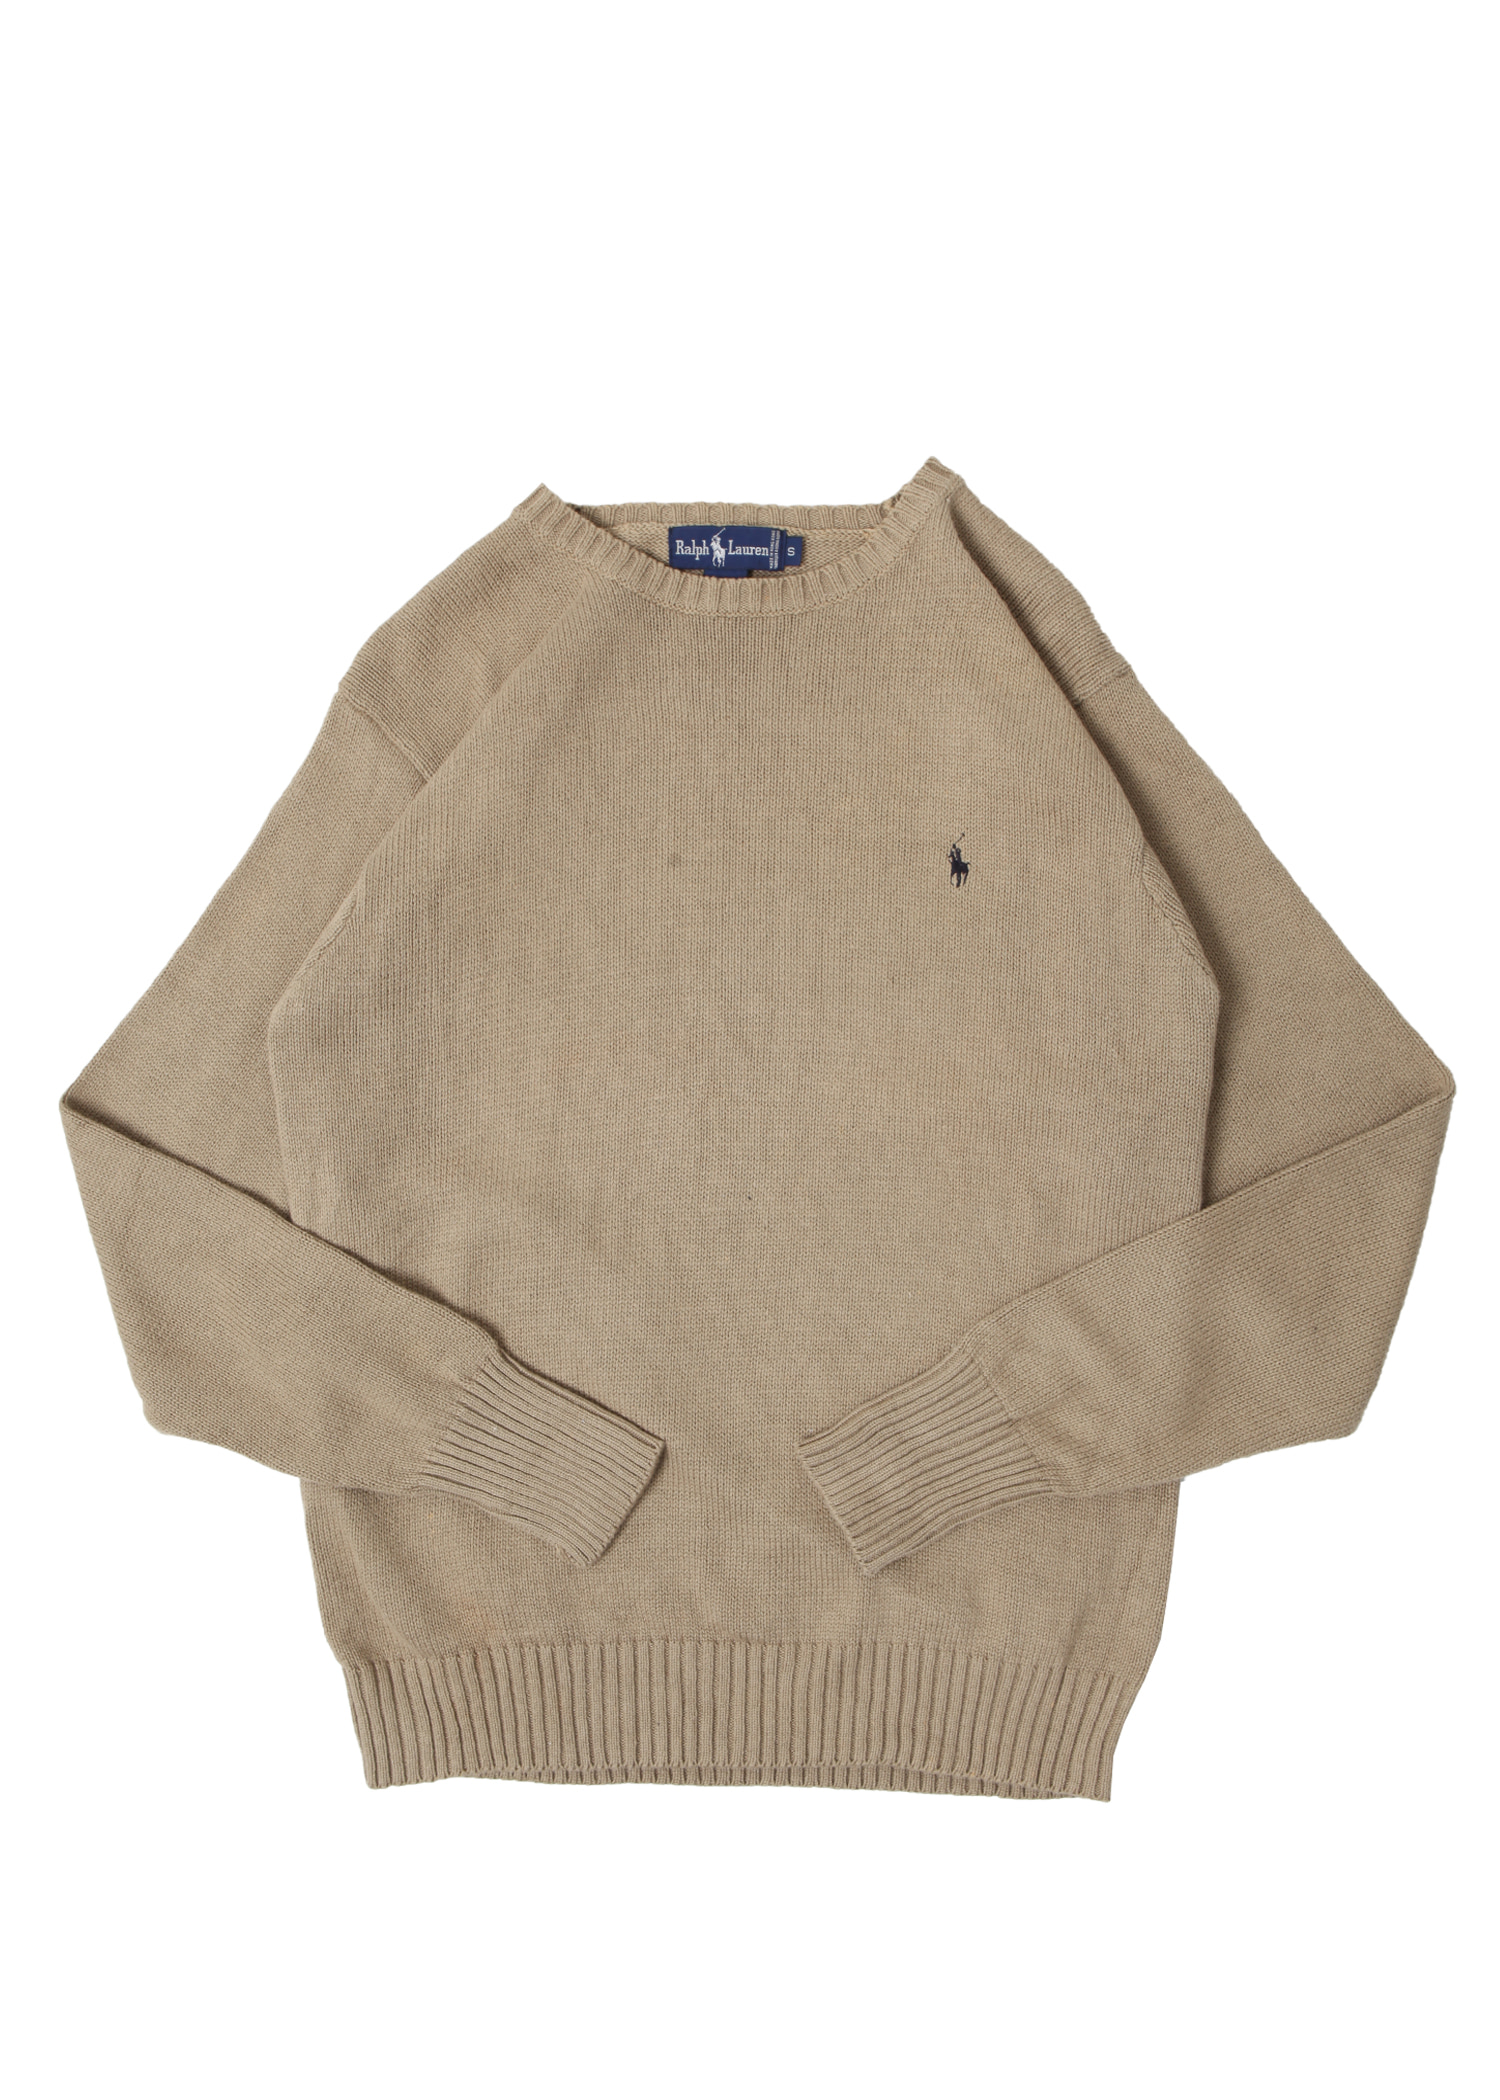 Polo Ralph Lauren cotton knit